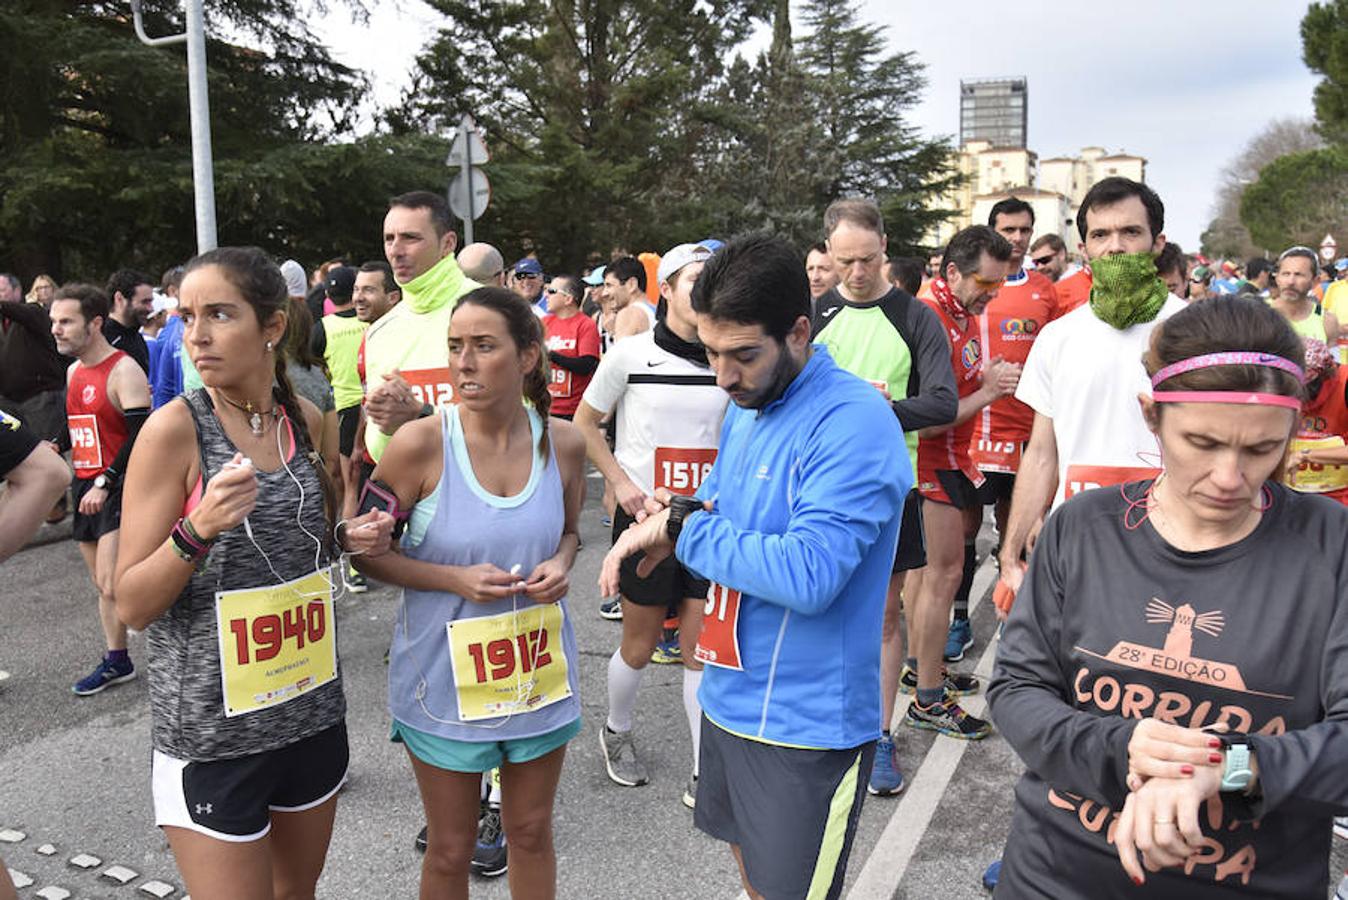 Bruno Paixão vuelve a ganar la maratón y Juan Domingo Gómez llega primero en la media. En la categoría femenina, Mercedes Pila vence en la maratón y Ana Rodríguez, en la media